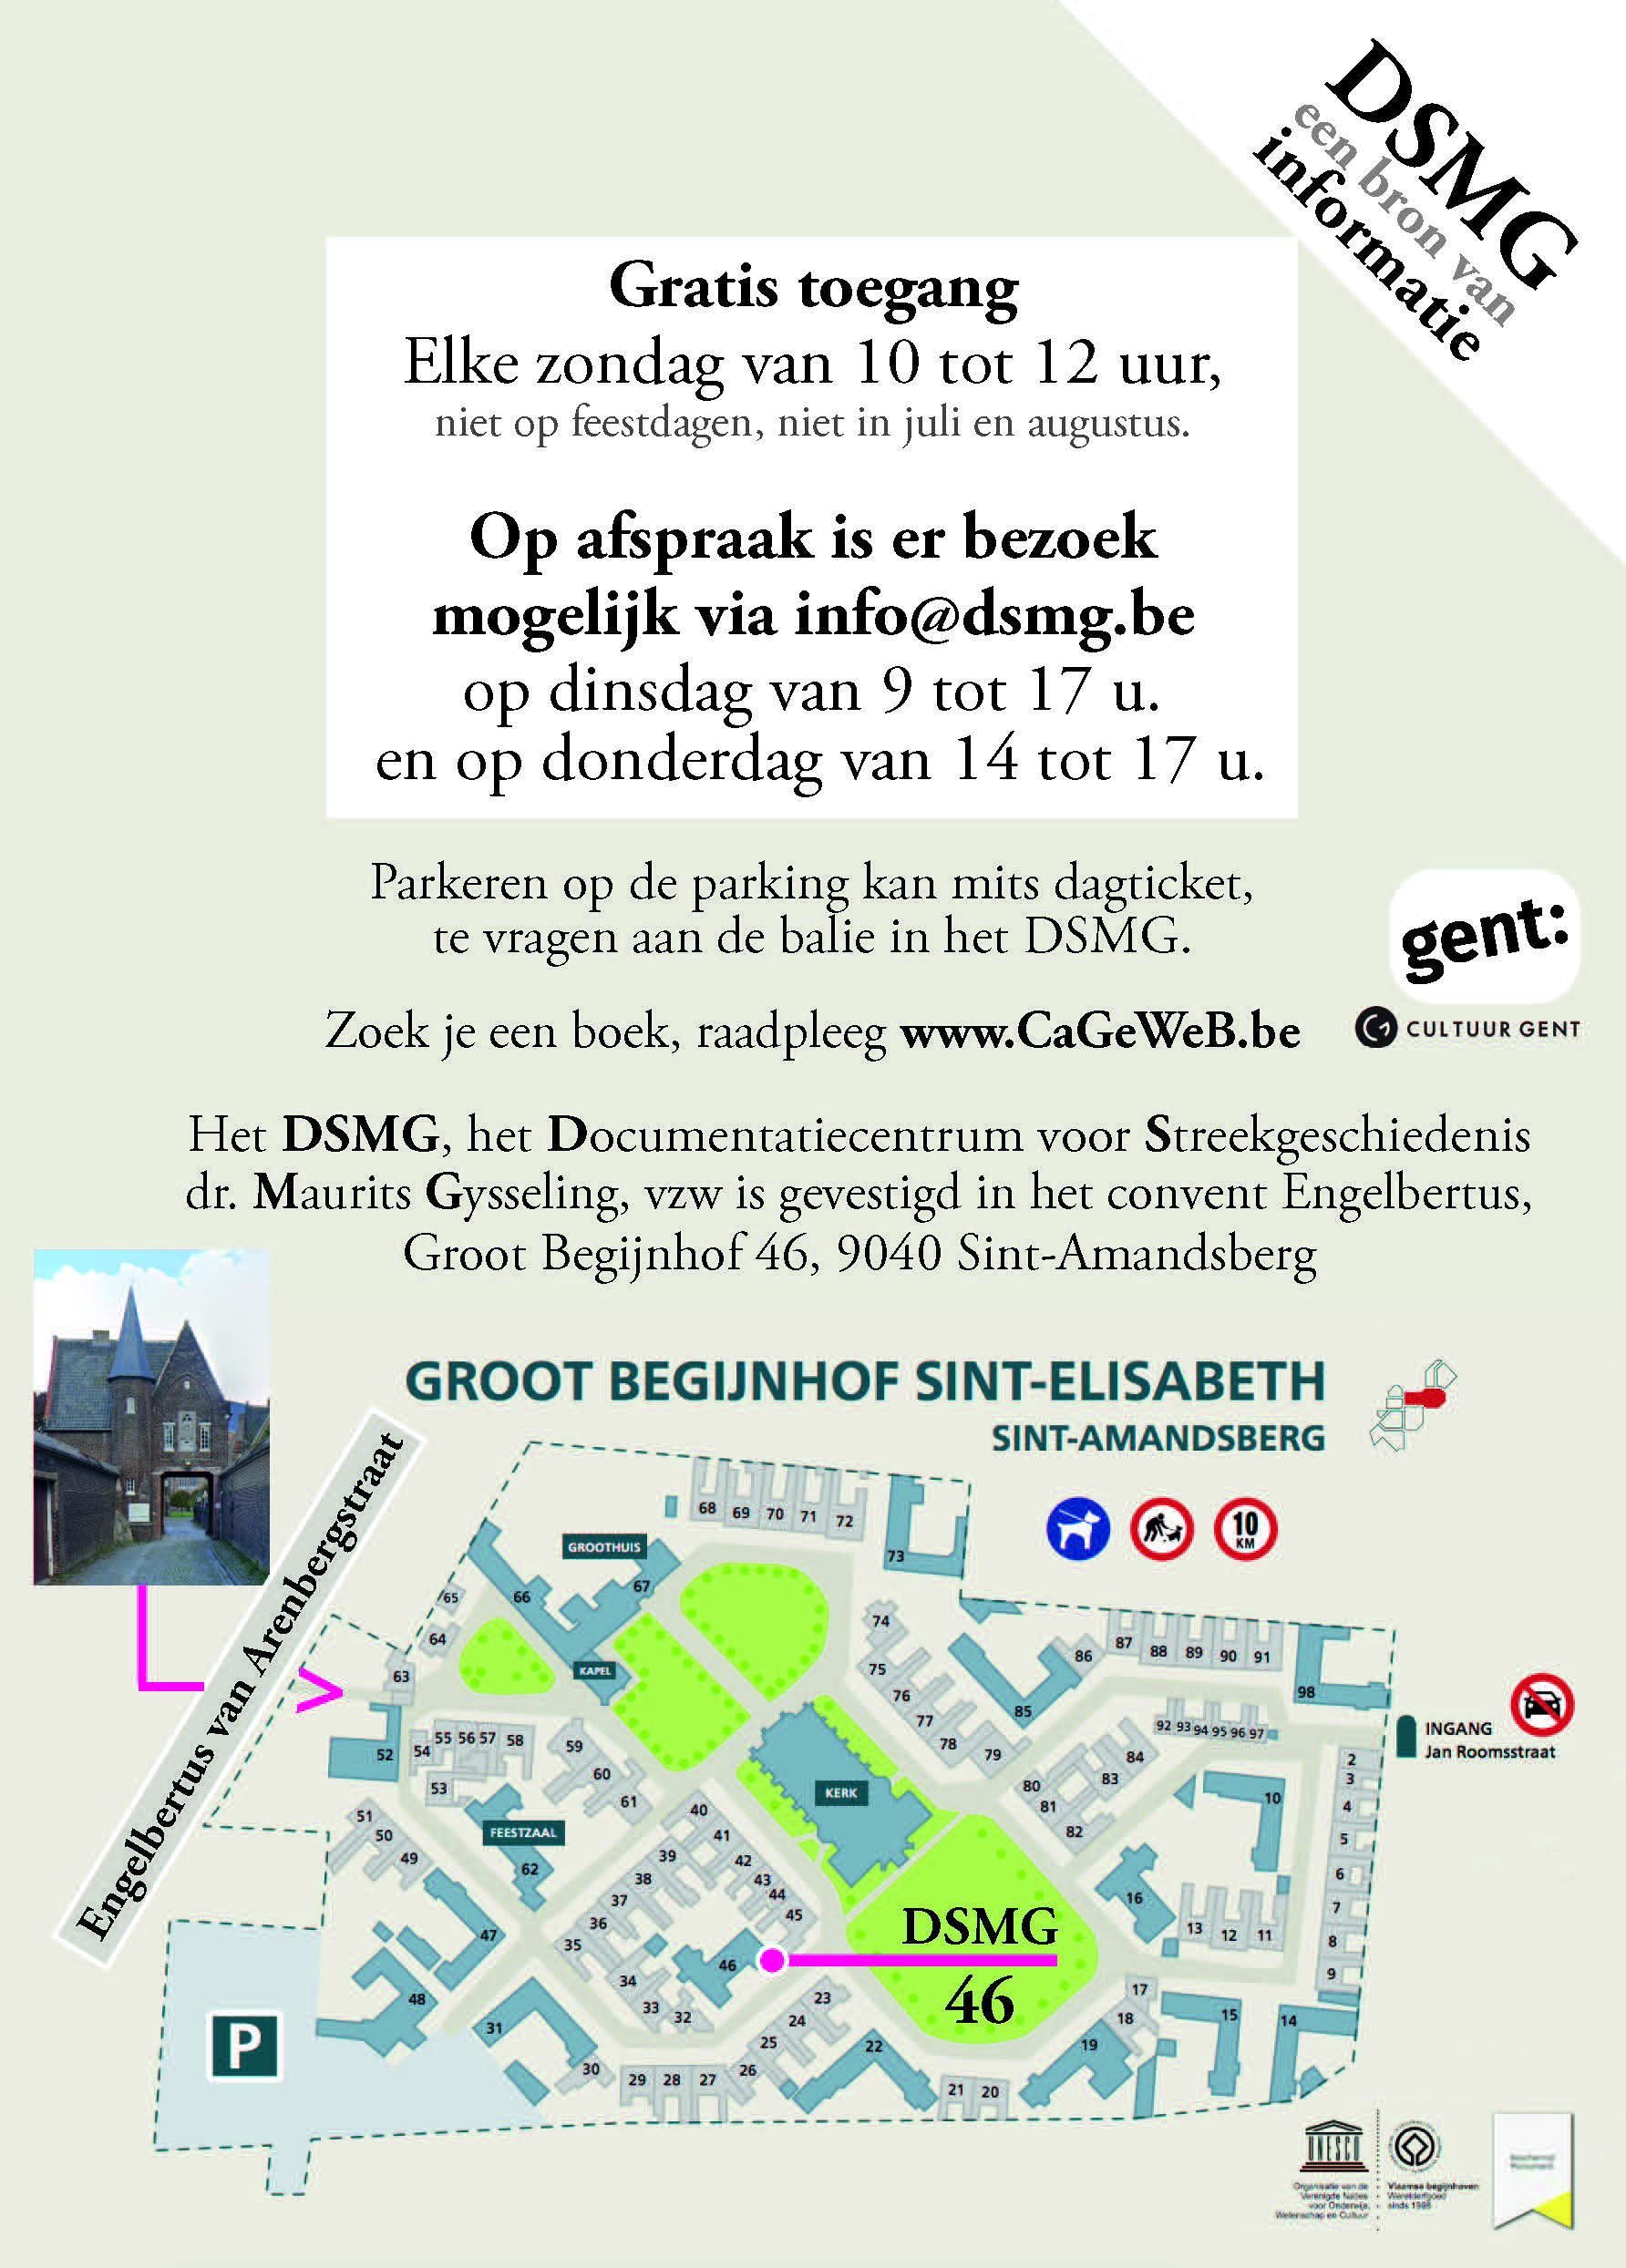 Plan om DSMG te vinden in het Groot Begijnhof, 2022